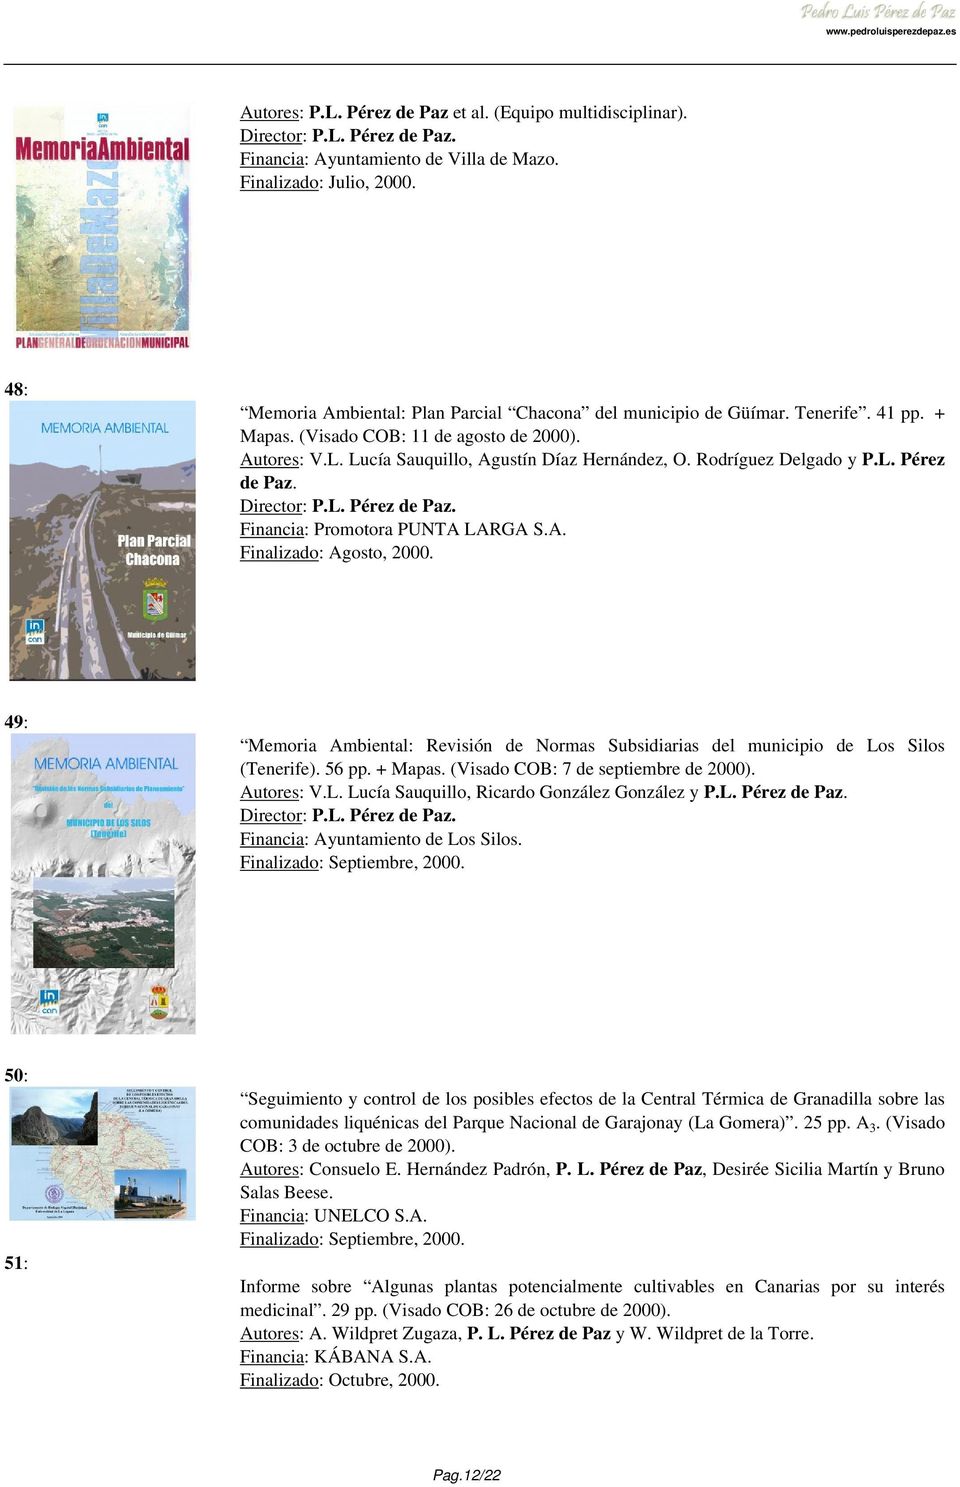 49: Memoria Ambiental: Revisión de Normas Subsidiarias del municipio de Los Silos (Tenerife). 56 pp. + Mapas. (Visado COB: 7 de septiembre de 2000). Autores: V.L. Lucía Sauquillo, Ricardo González González y P.